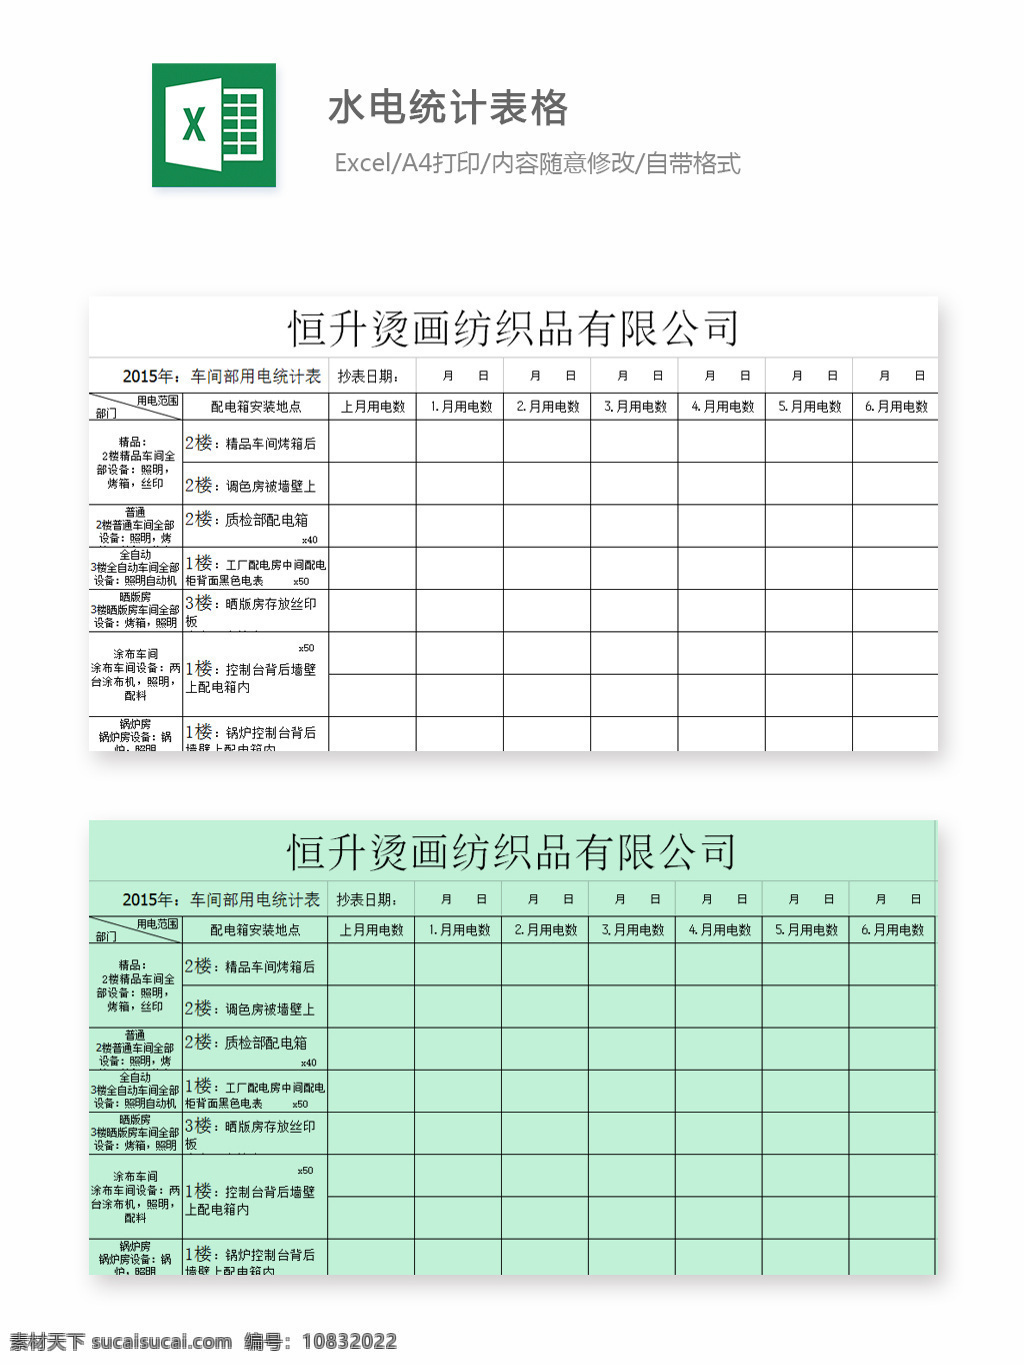 水电统计表格 表格 表格模板 表格设计 图表 水电 统计